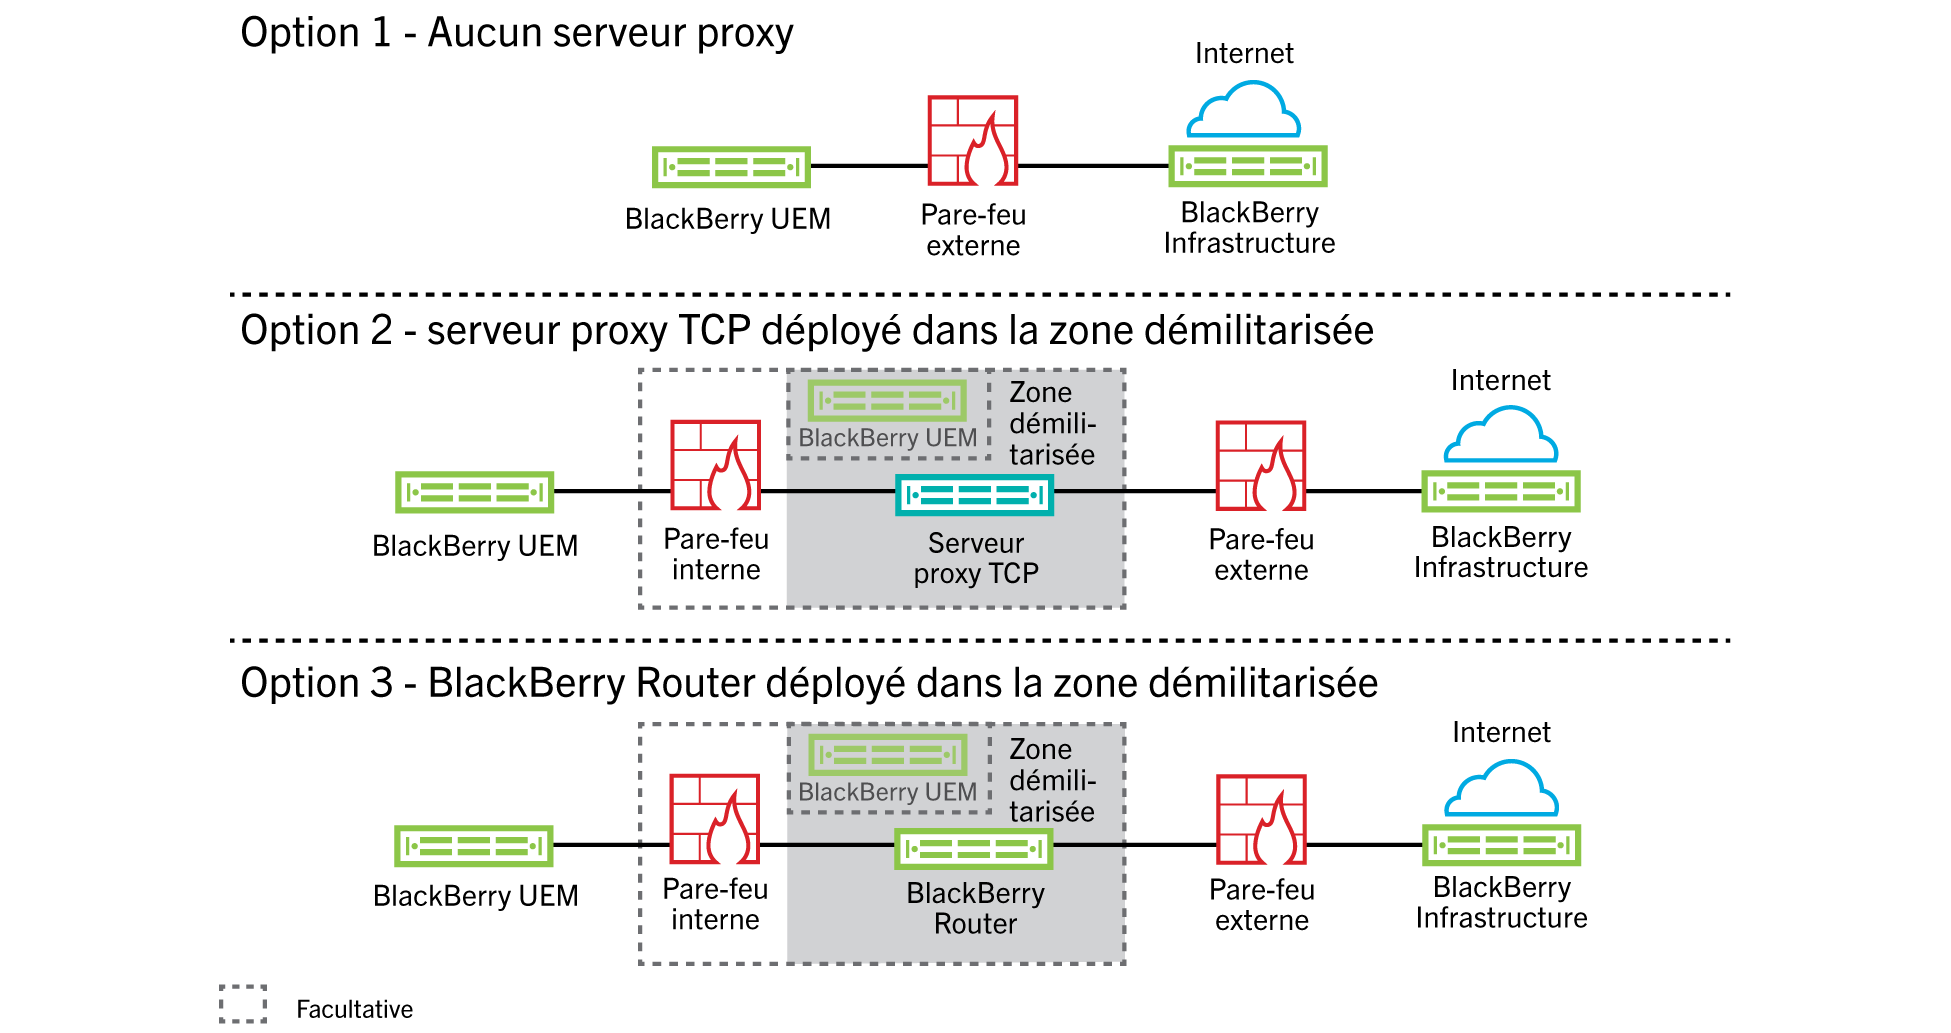 Ce schéma illustre les options de configuration de BlackBerry UEM permettant d'utiliser aucun serveur proxy, un serveur proxy TCP déployé dans la zone démilitarisée et BlackBerry Router déployé dans la zone démilitarisée.